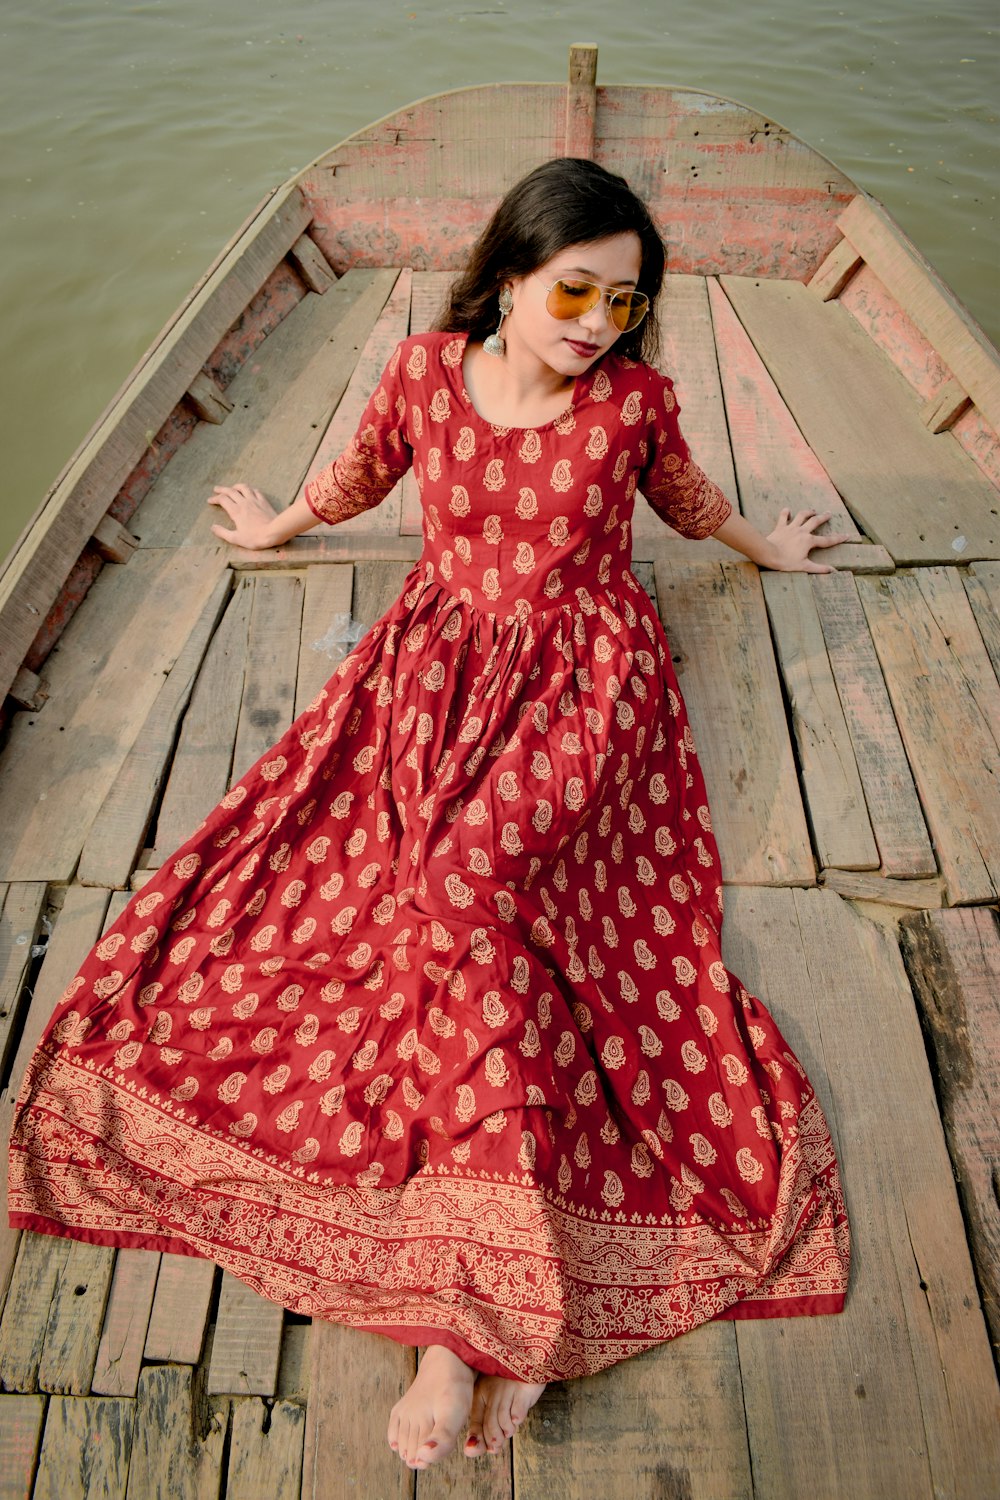 Foto Mujer con vestido de lunares rojo y blanco – Imagen gratis en Unsplash